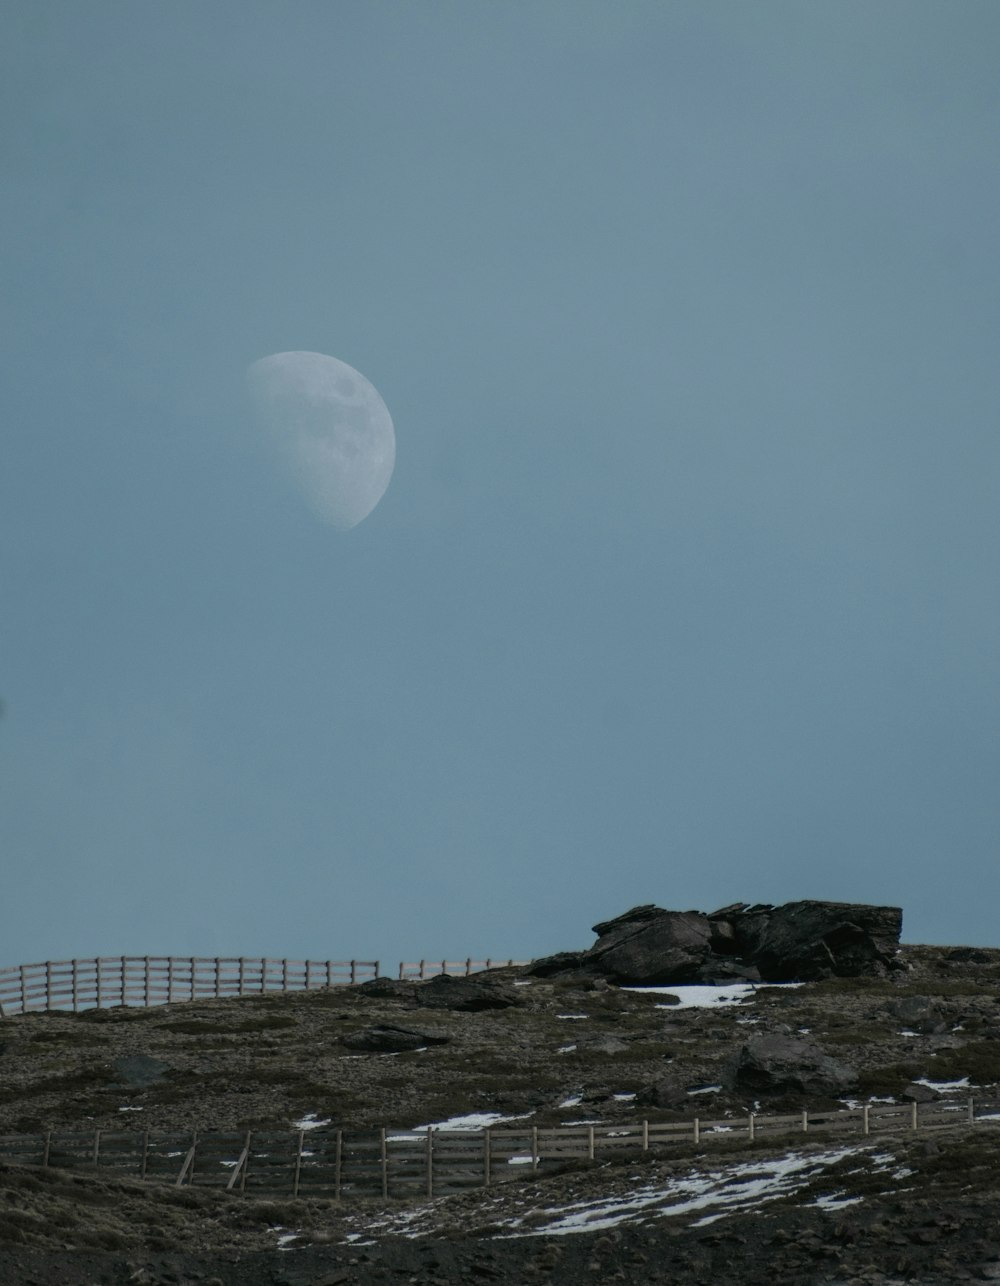 Una luna piena è vista oltre una recinzione in cima a una collina